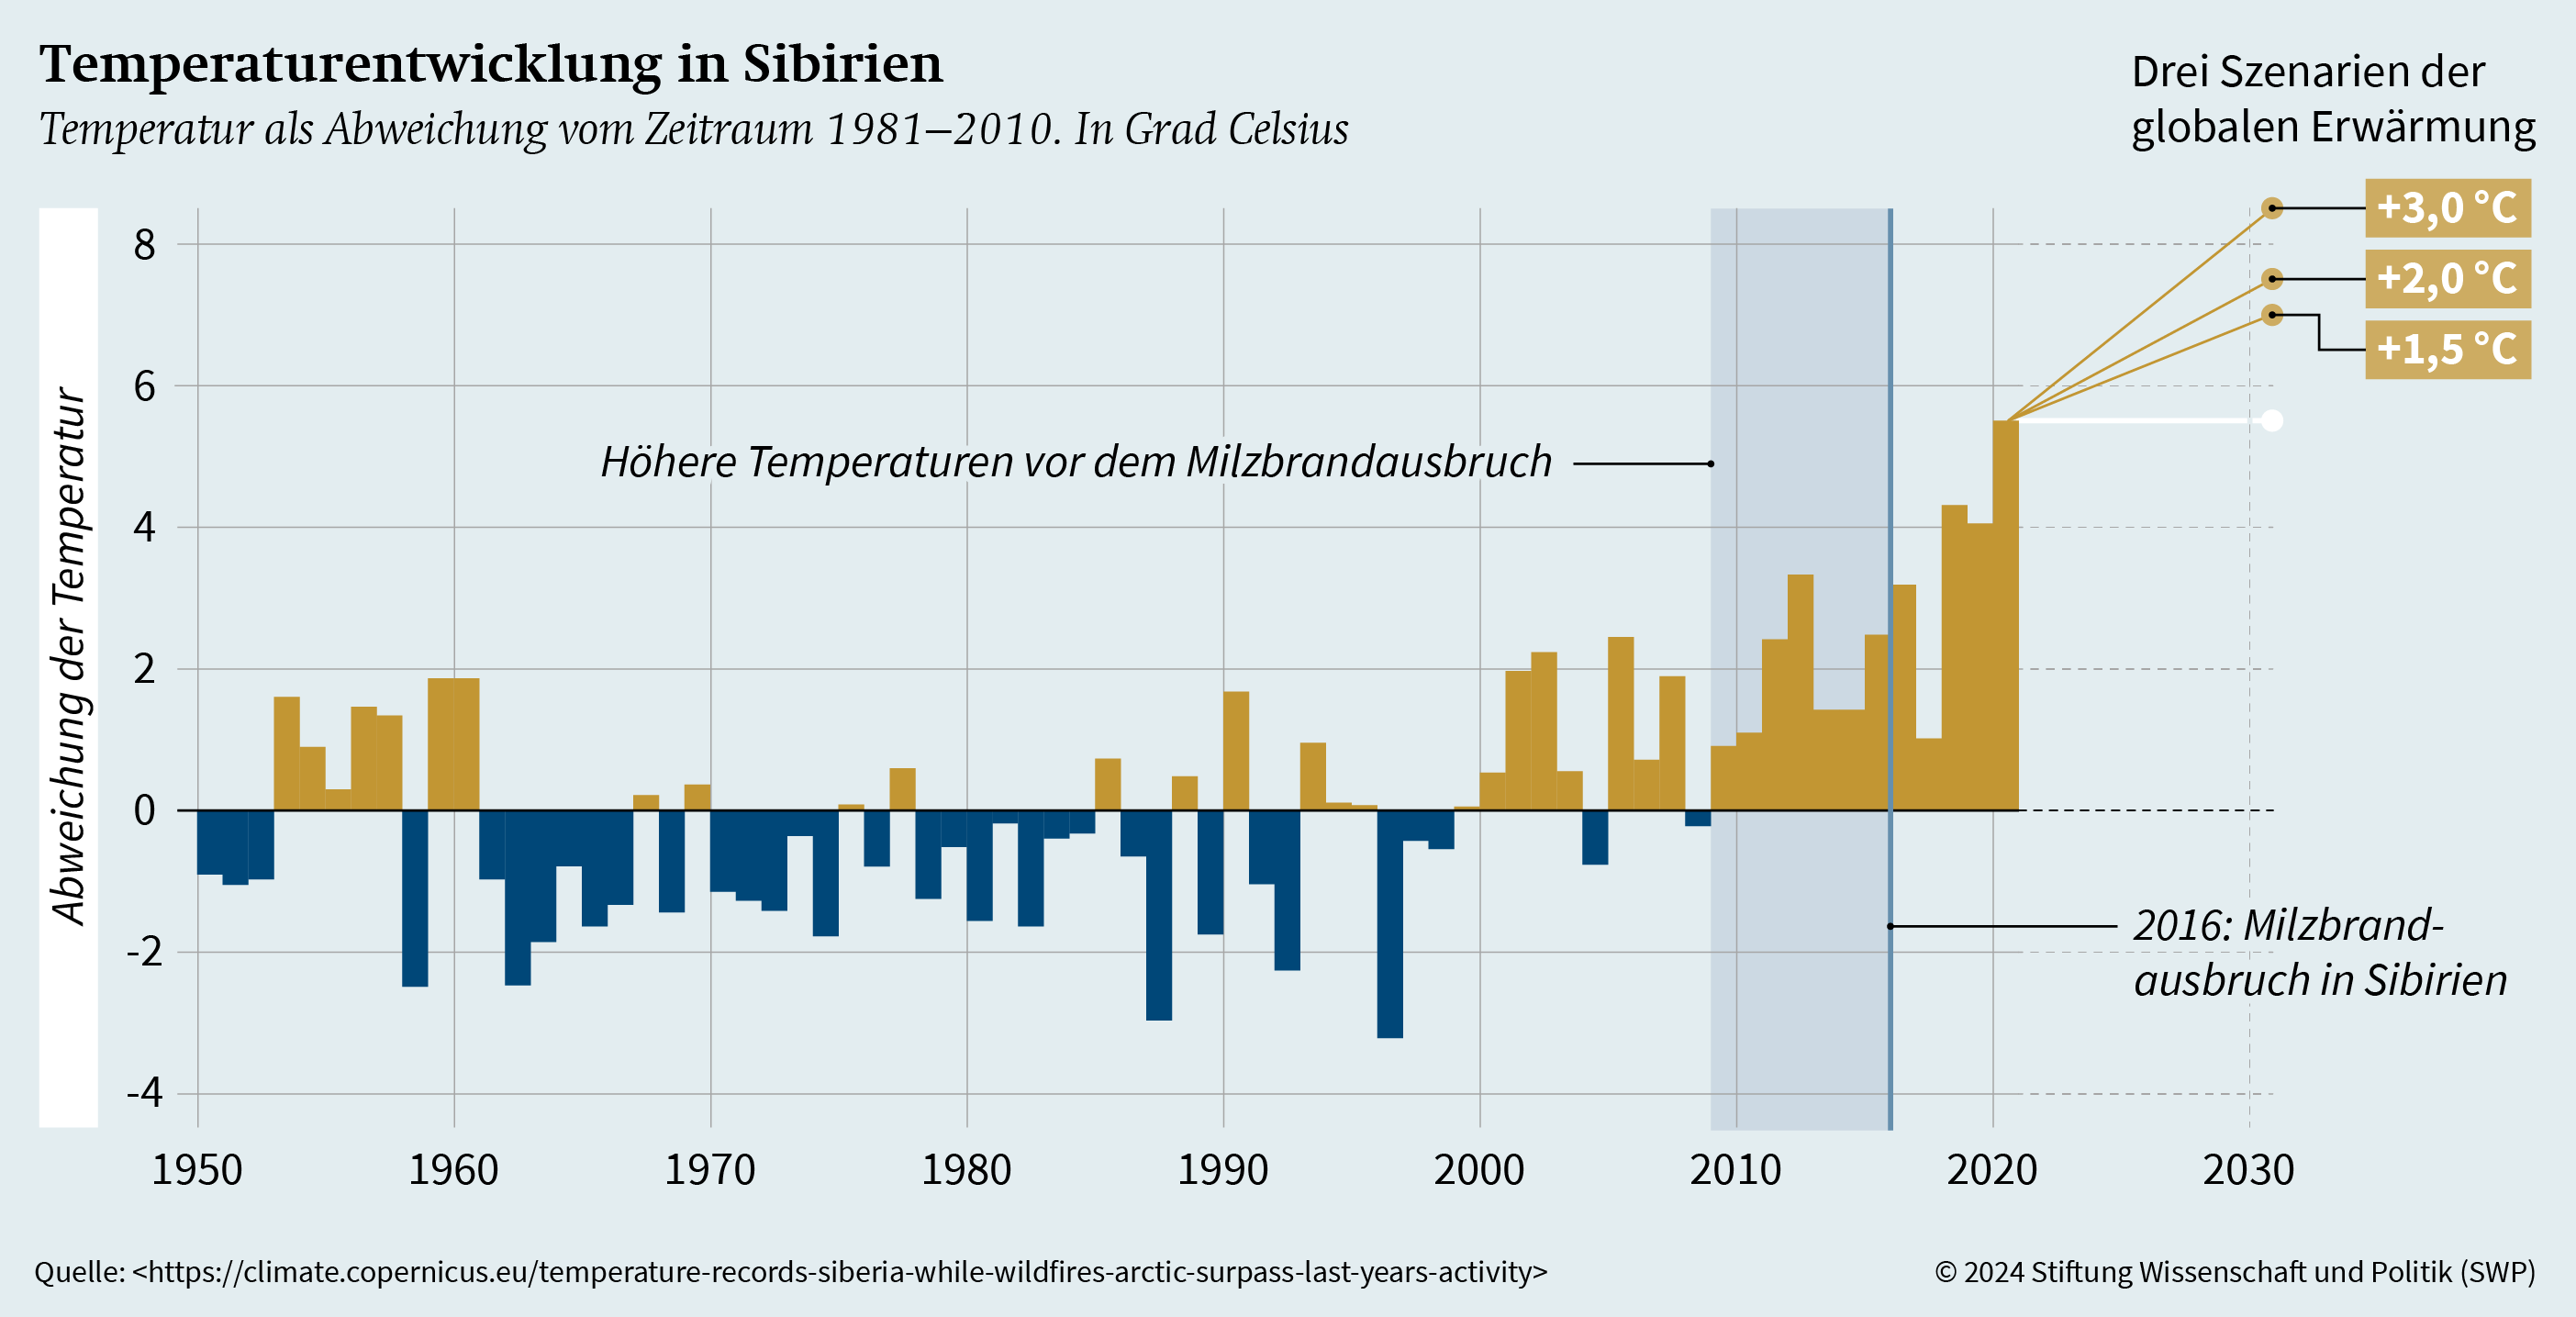 Graphik 1: Temperaturentwicklung in Sibirien, 1950 bis 2020